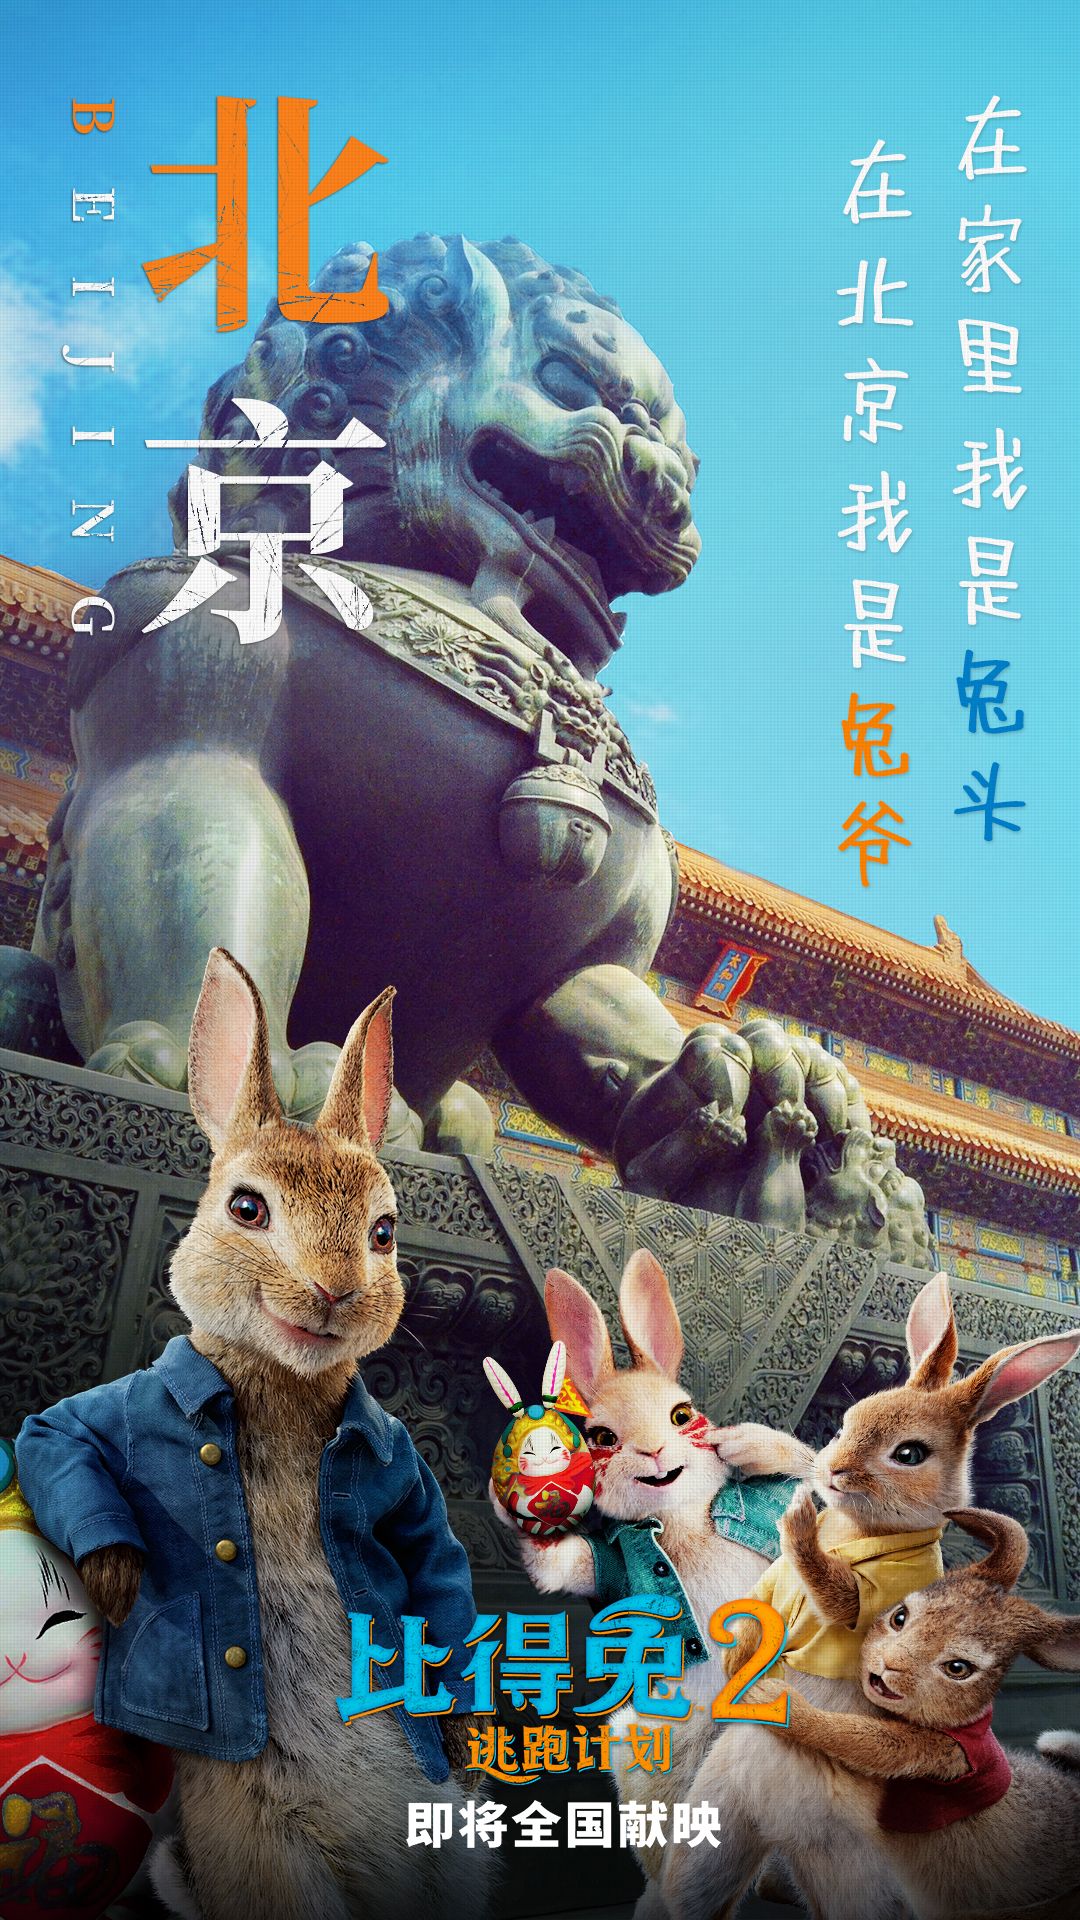 《比得兔2：逃跑计划》海报预告双发 “兔一哥”实力认证城里好